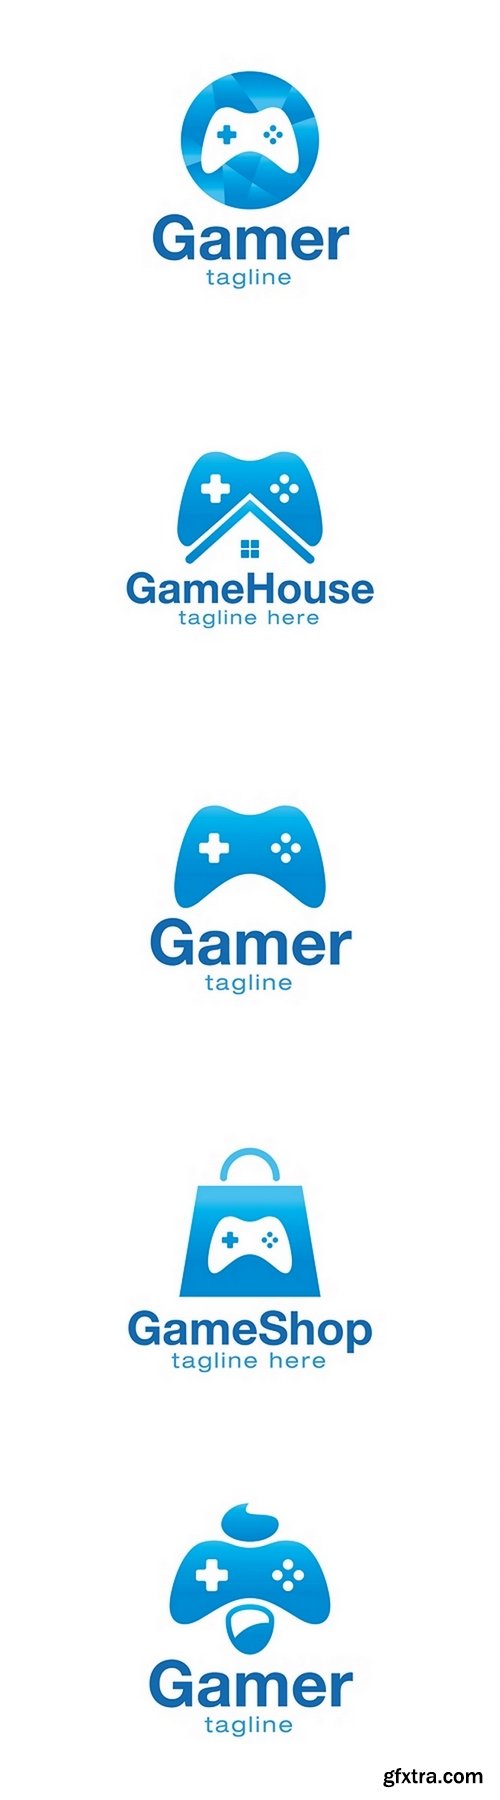 Game icon logo design vector